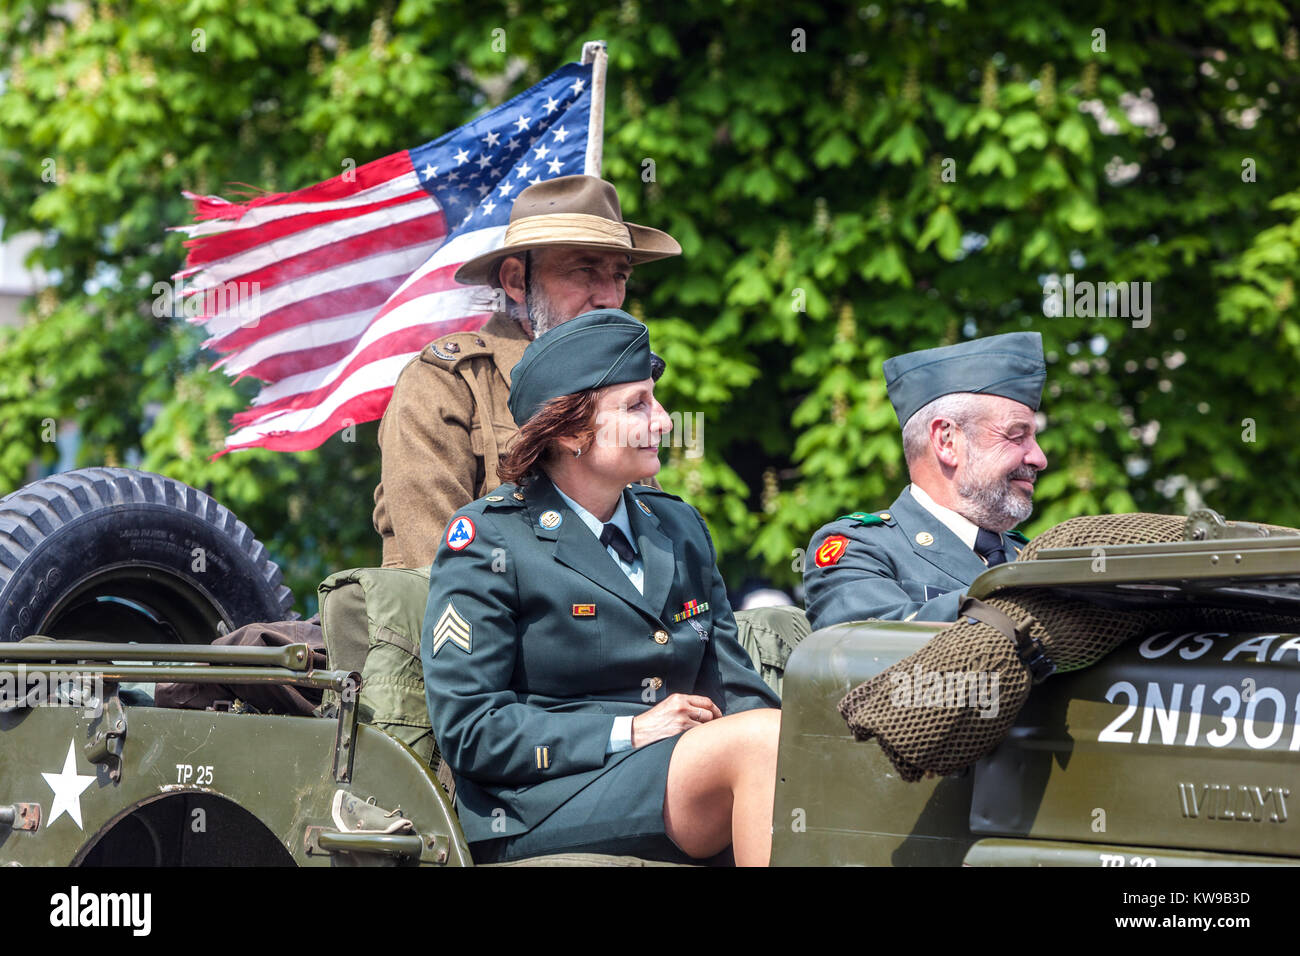 Célébrations de la ville libérée, ville tchèque de Plzen, soldats américains de la seconde guerre mondiale de la République tchèque de Pilsen Banque D'Images